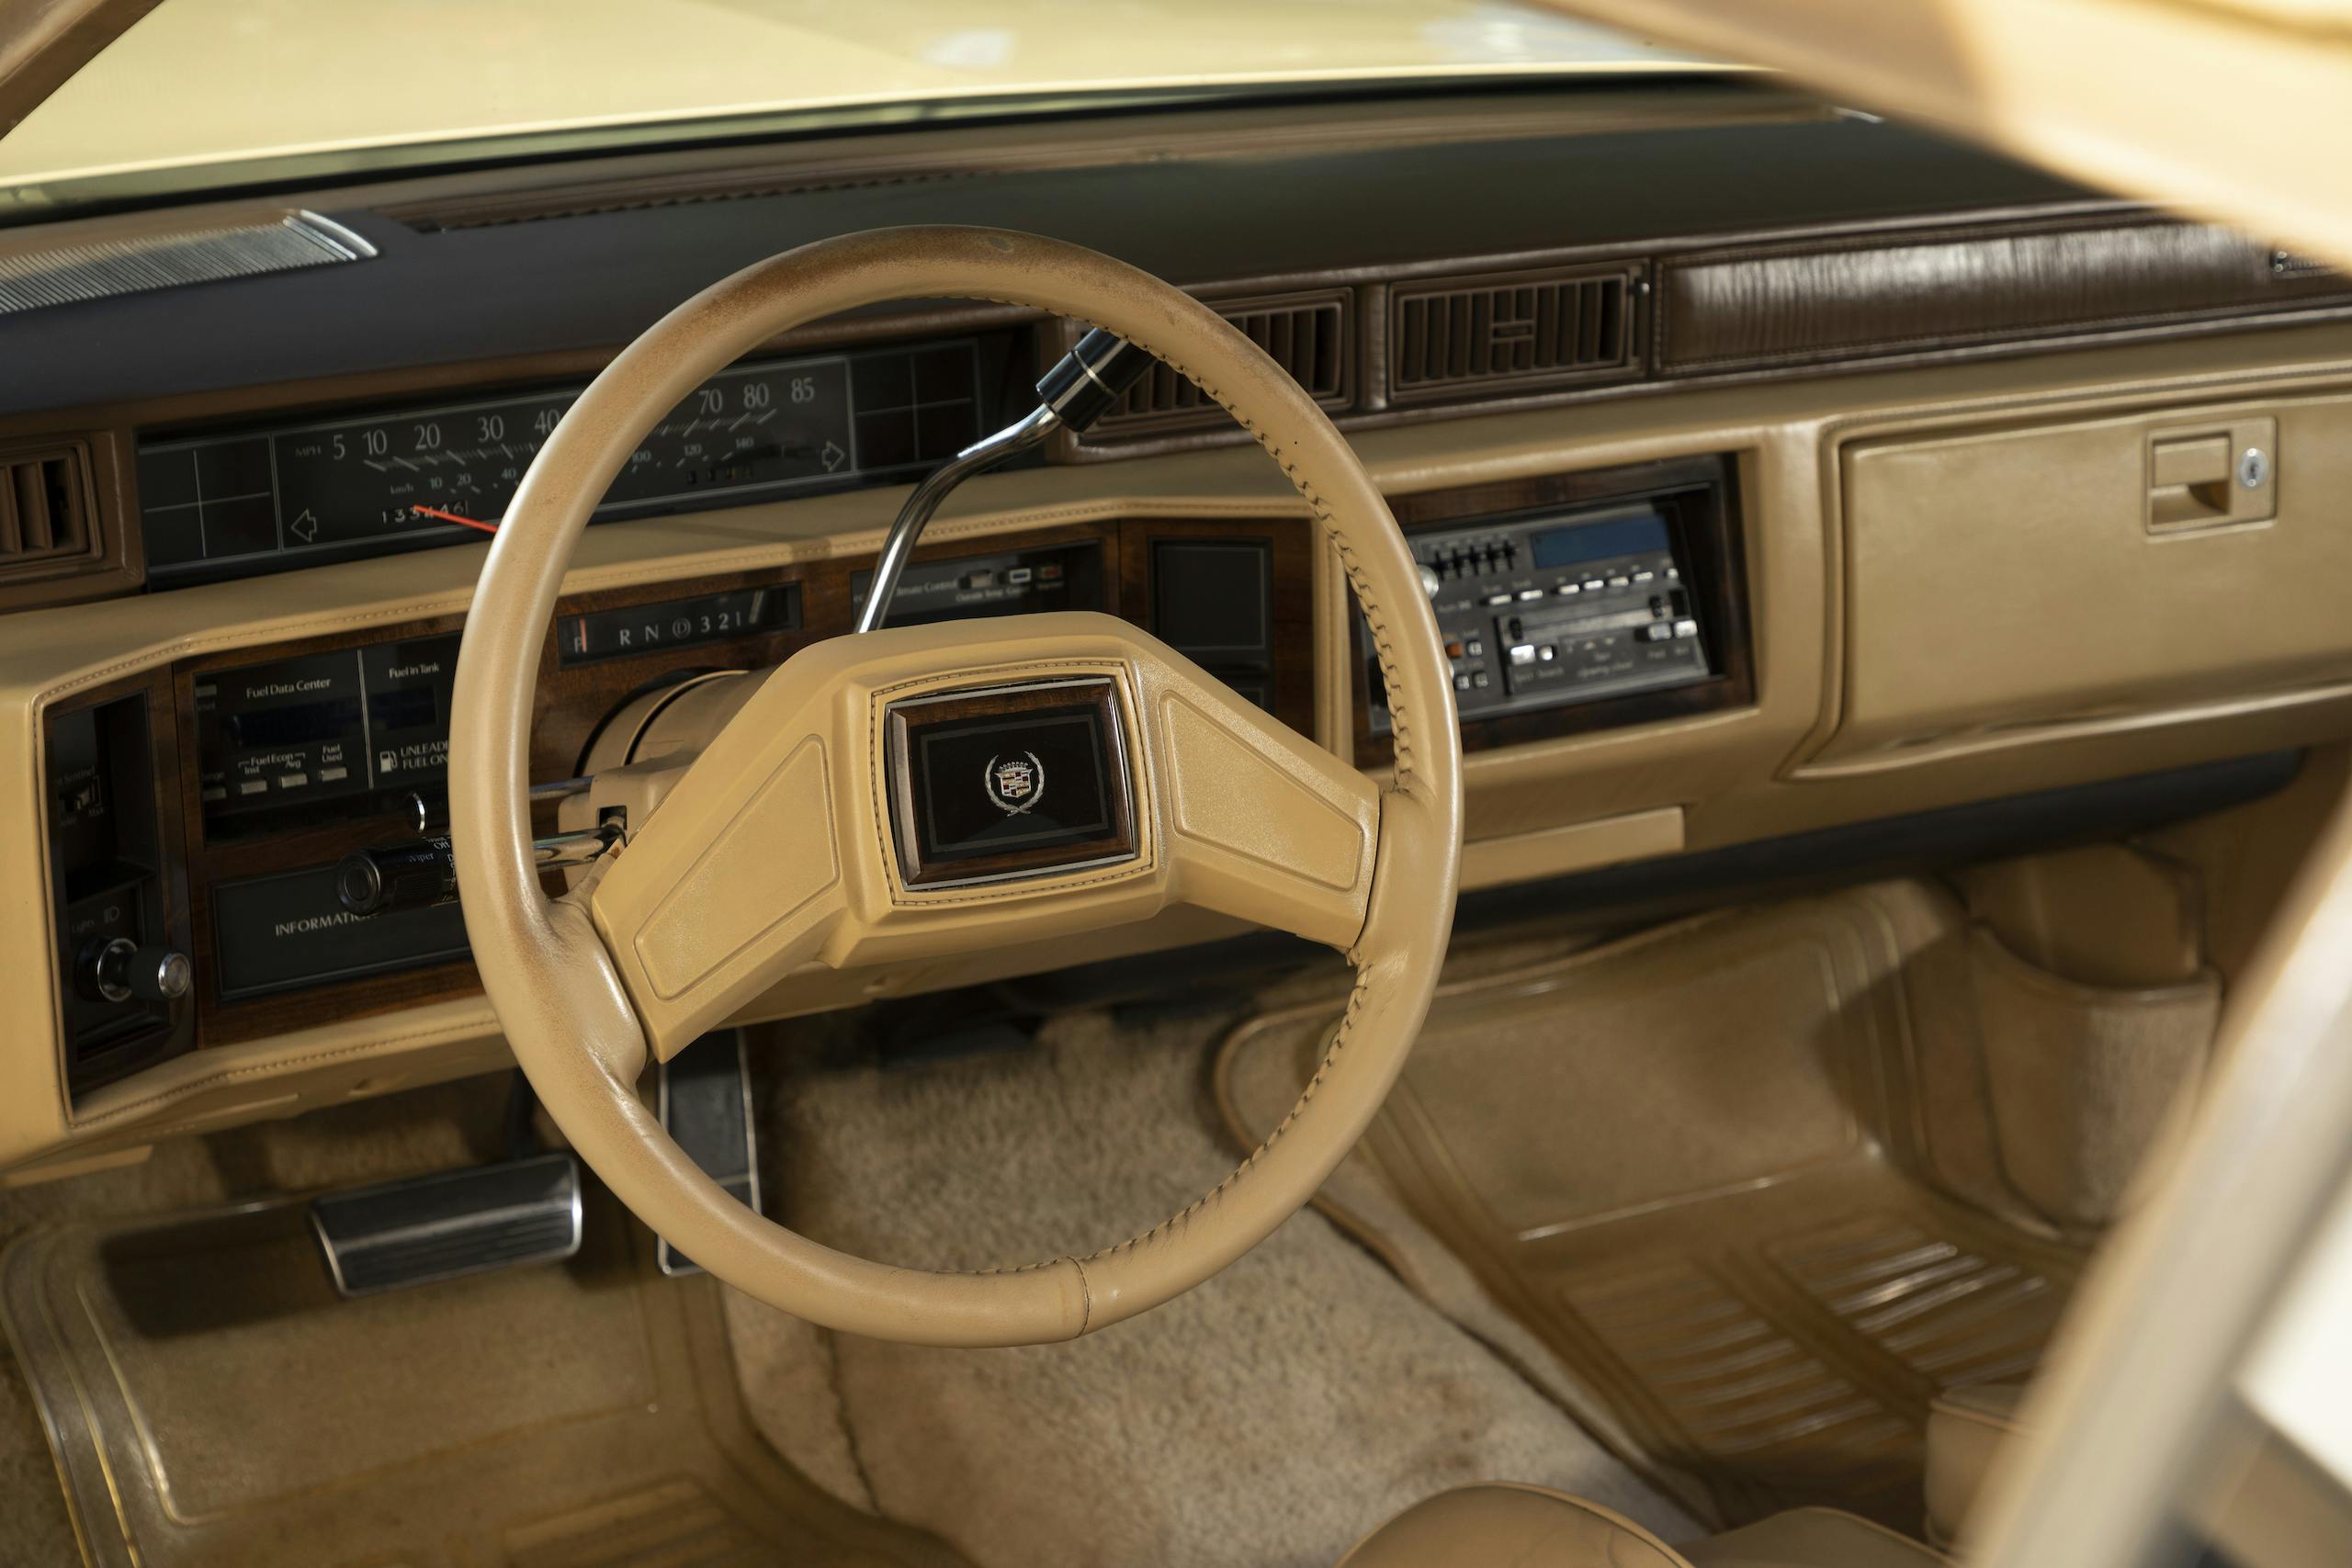 1986 Cadillac Coupe DeVille interior